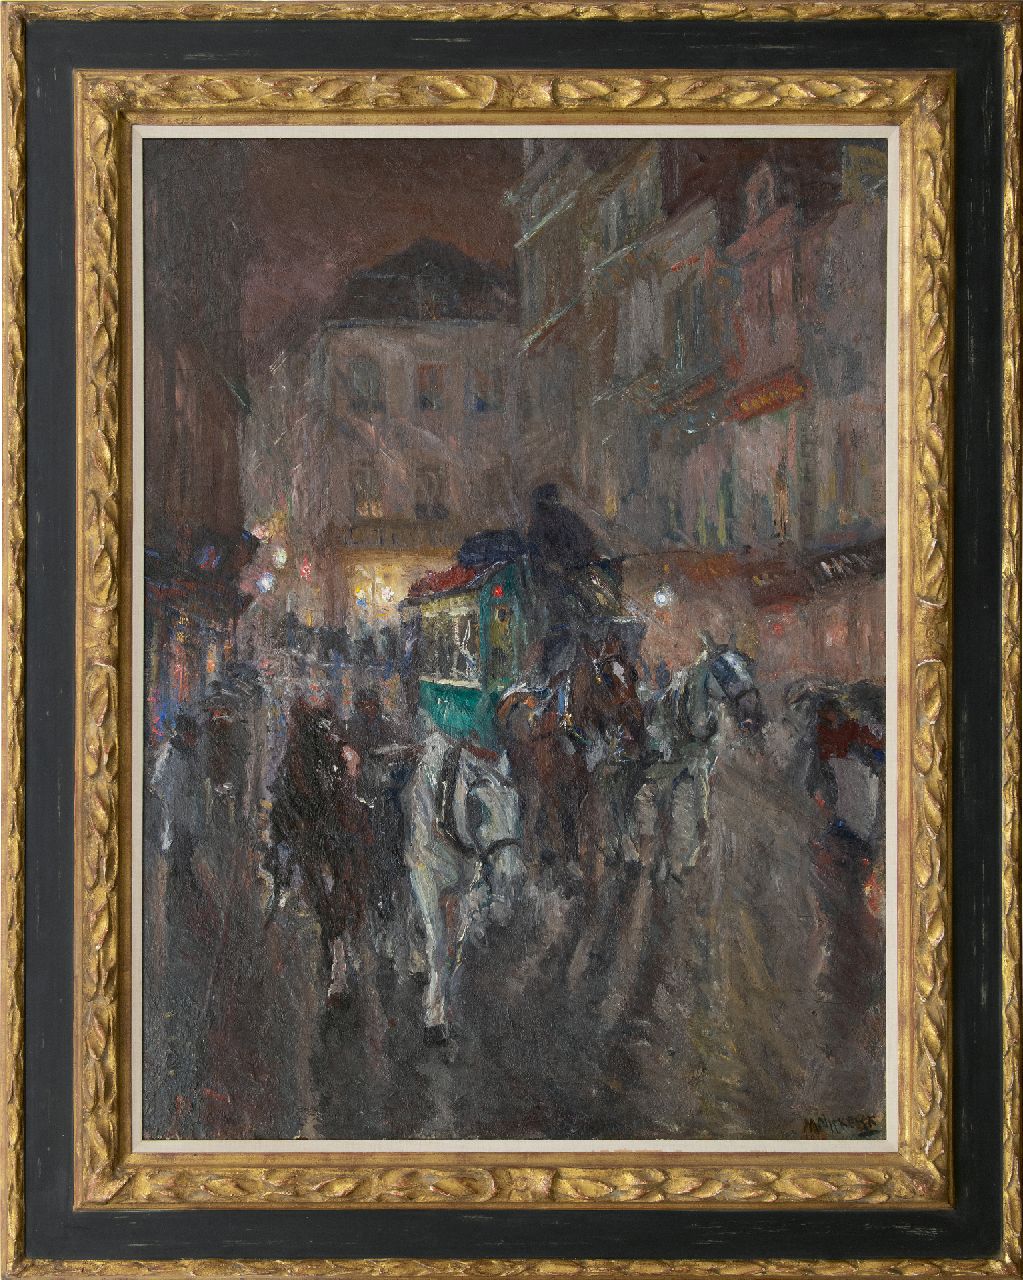 Niekerk M.J.  | 'Maurits' Joseph Niekerk | Schilderijen te koop aangeboden | Omnibus in de stad bij avond, olieverf op doek 115,5 x 85,3 cm, gesigneerd rechtsonder en gedateerd 1919